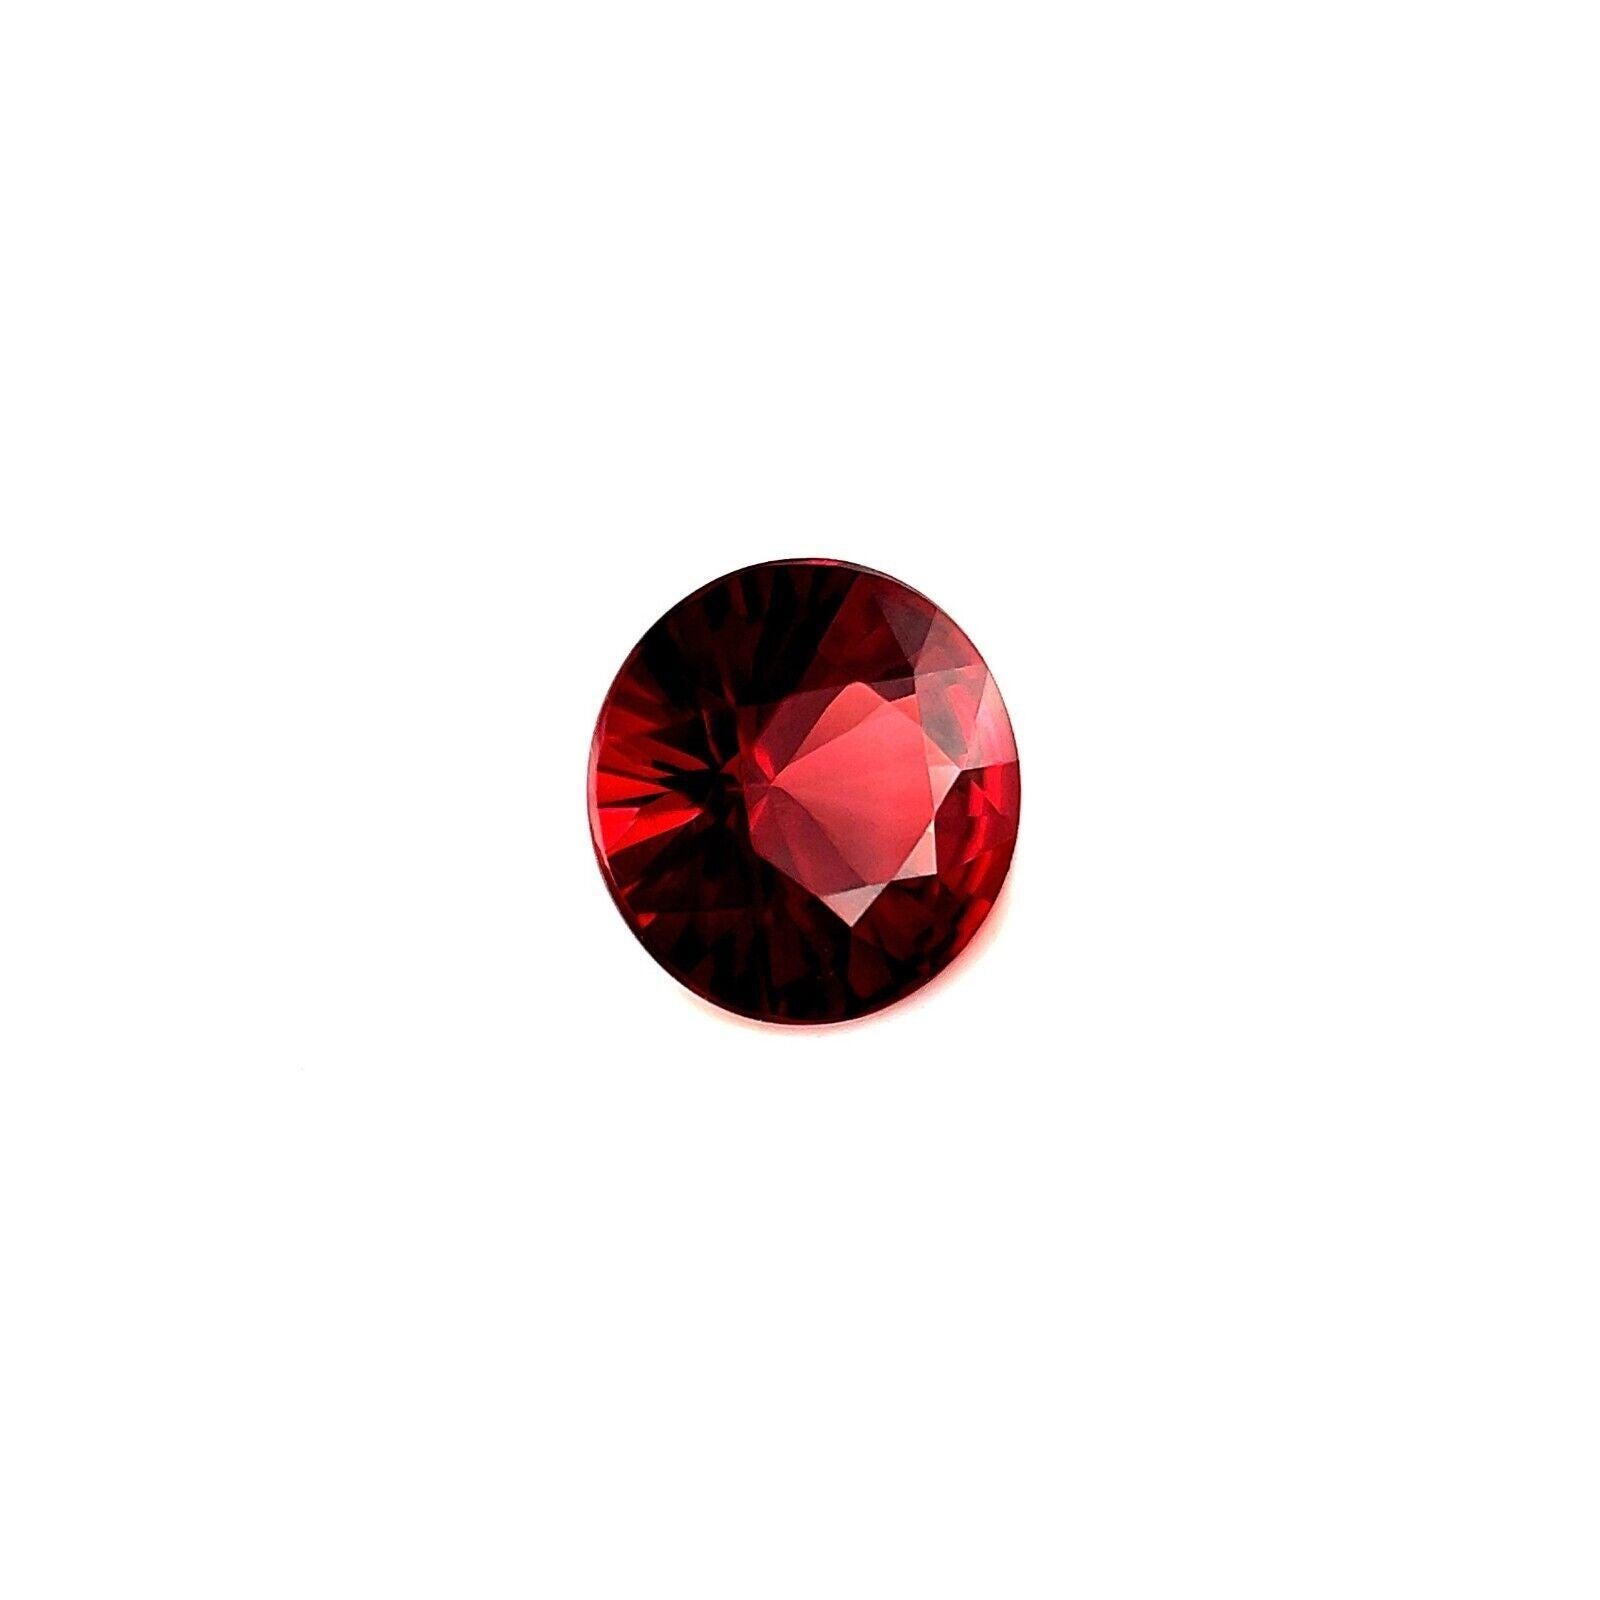 1.89ct Vivid Rhodolite Garnet 7.5mm Red Round Brilliant Diamond Cut Calibrated (grenat rhodolite)

Grenat Rhodolite rouge vif naturel 1.89ct.
Elle présente une excellente coupe brillante ronde et une très bonne à excellente clarté, VS. La pierre a